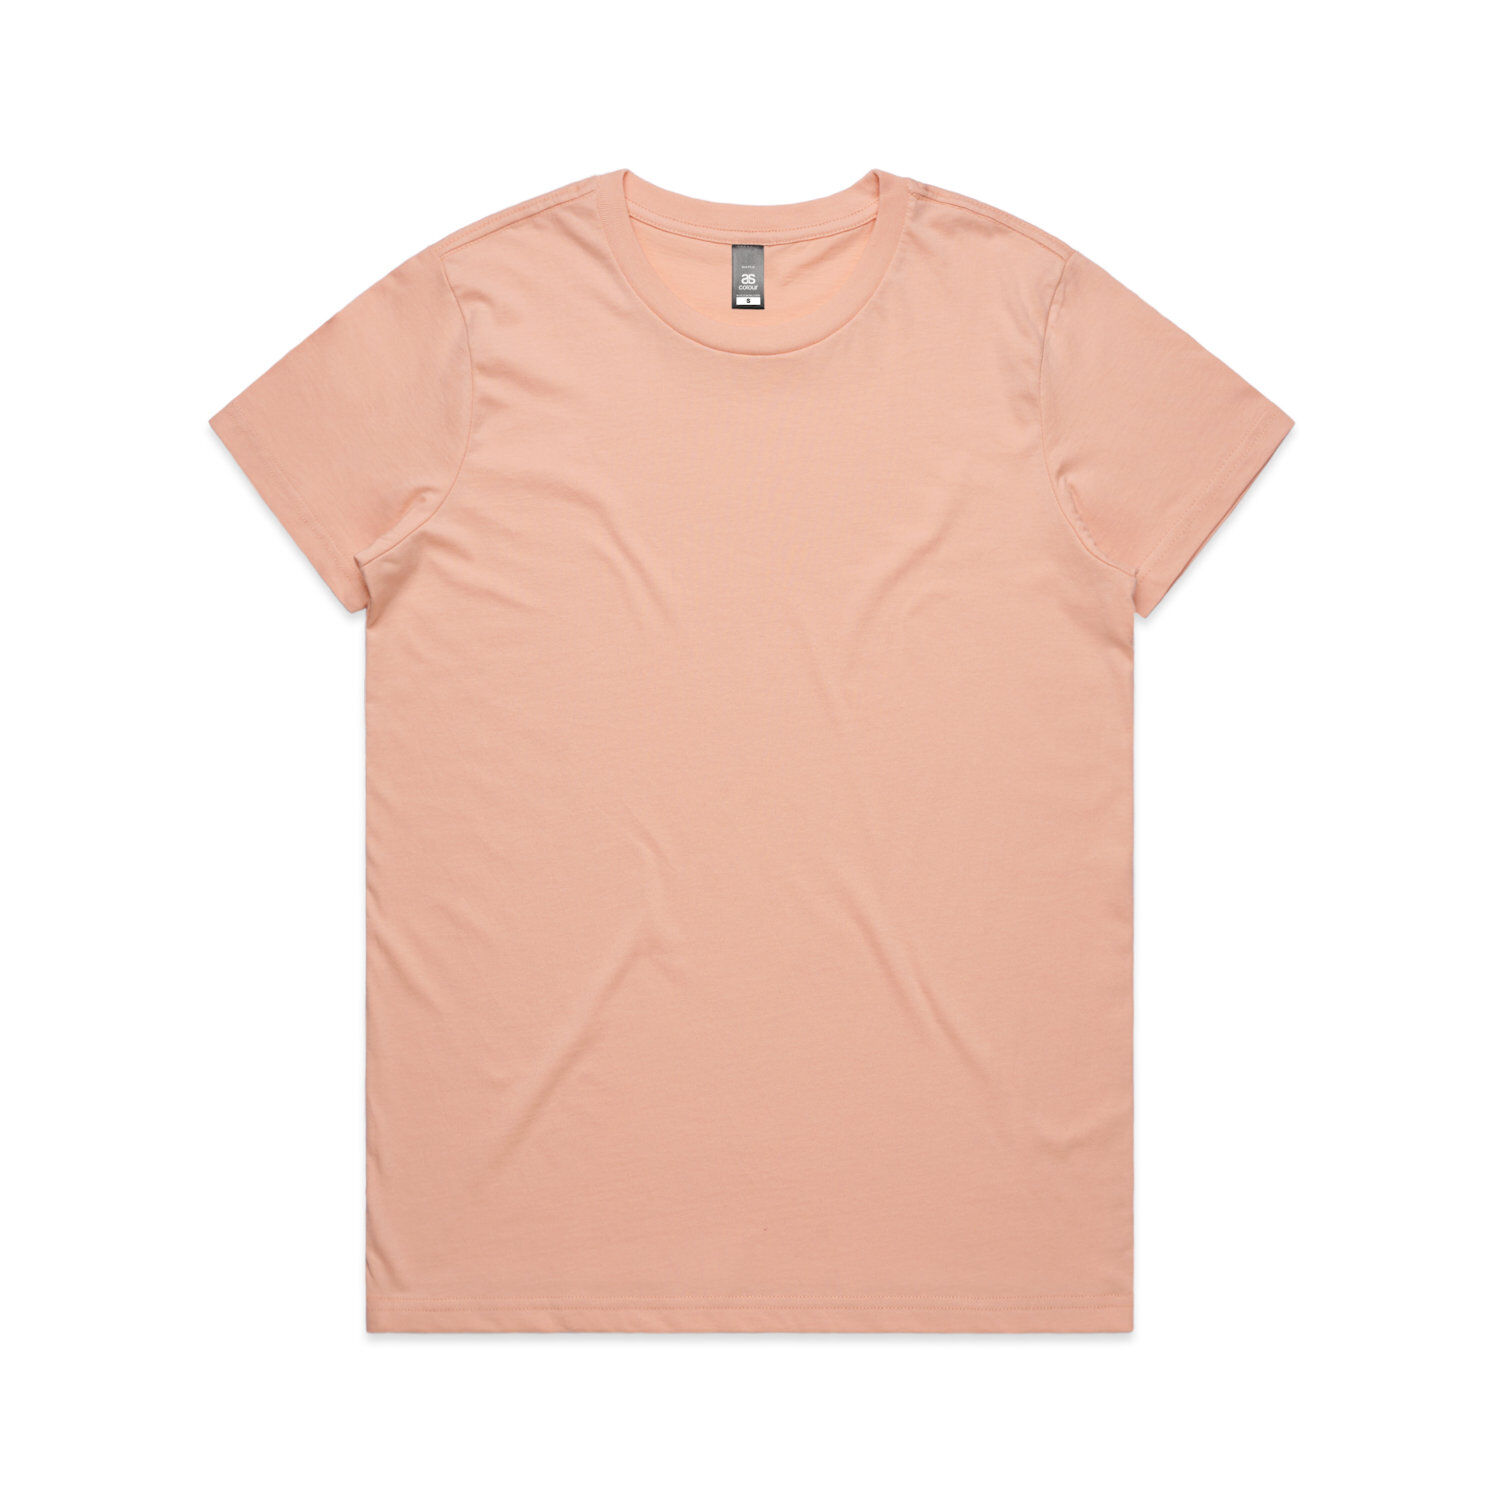 AS Colour Women's Maple T-Shirt(pale pink)